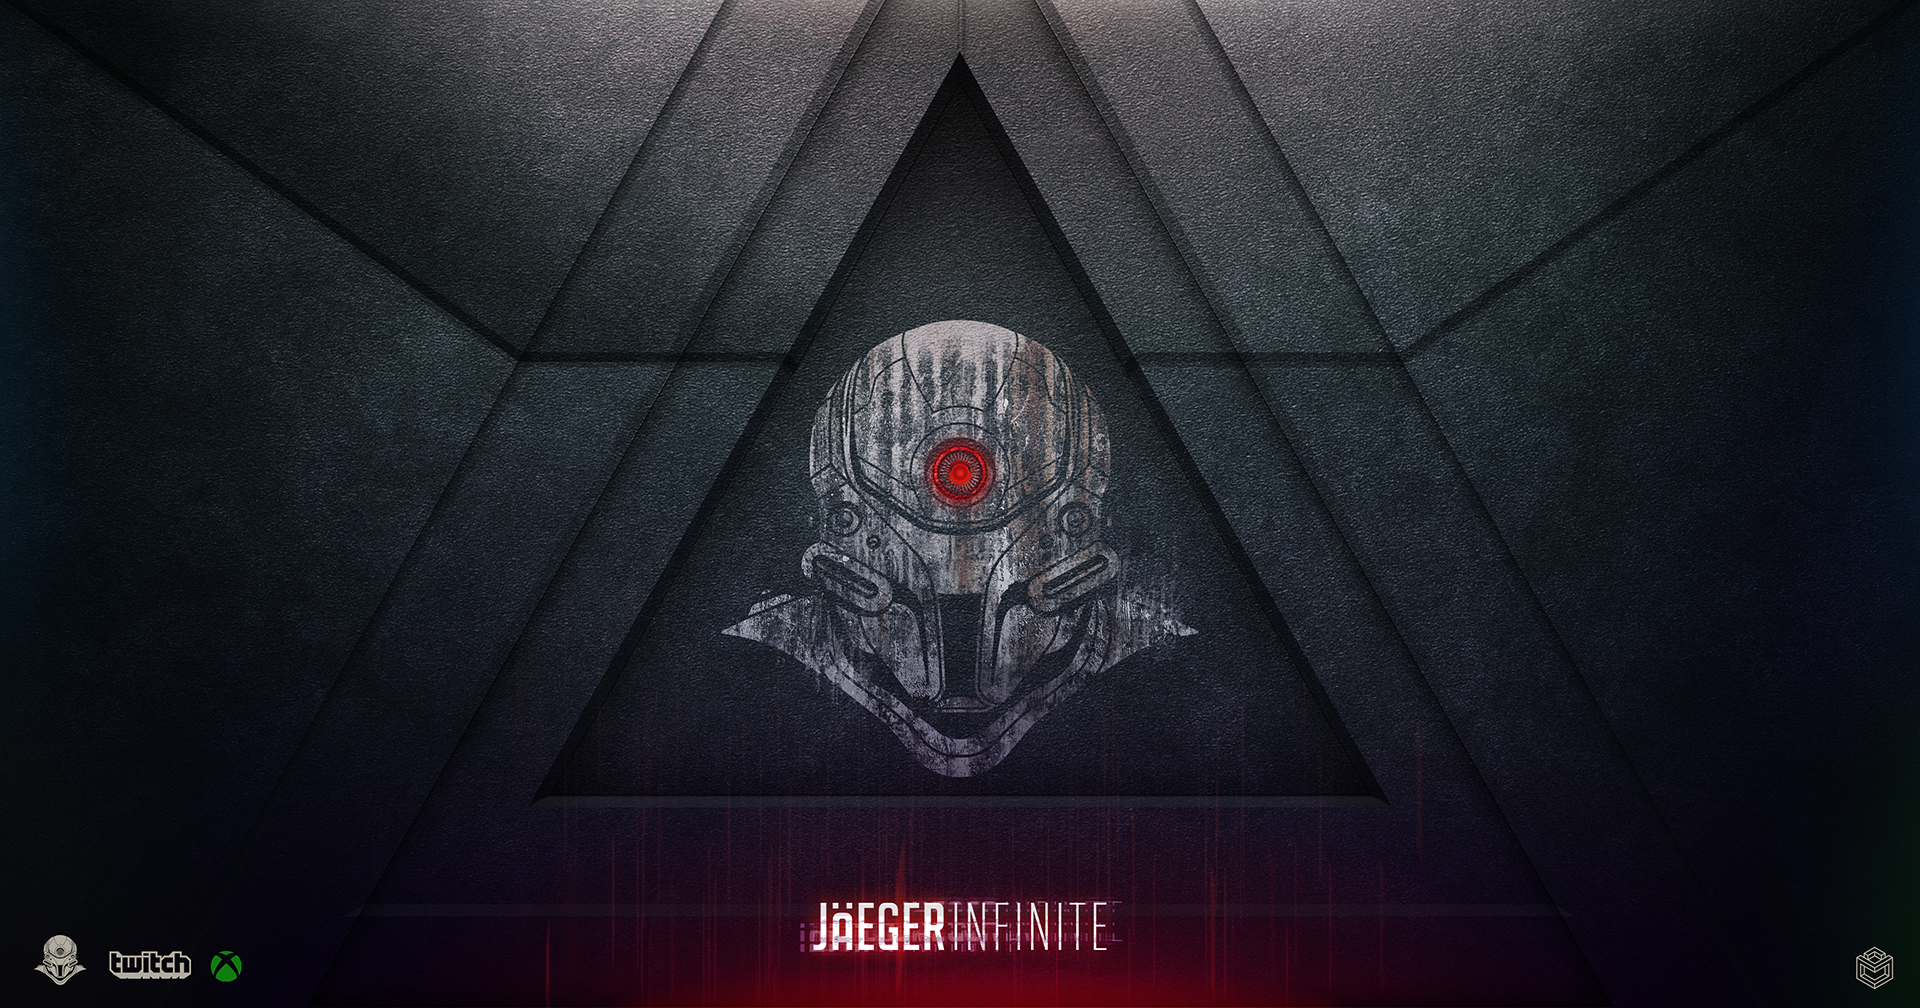 Jaeger infintie logo only_5555